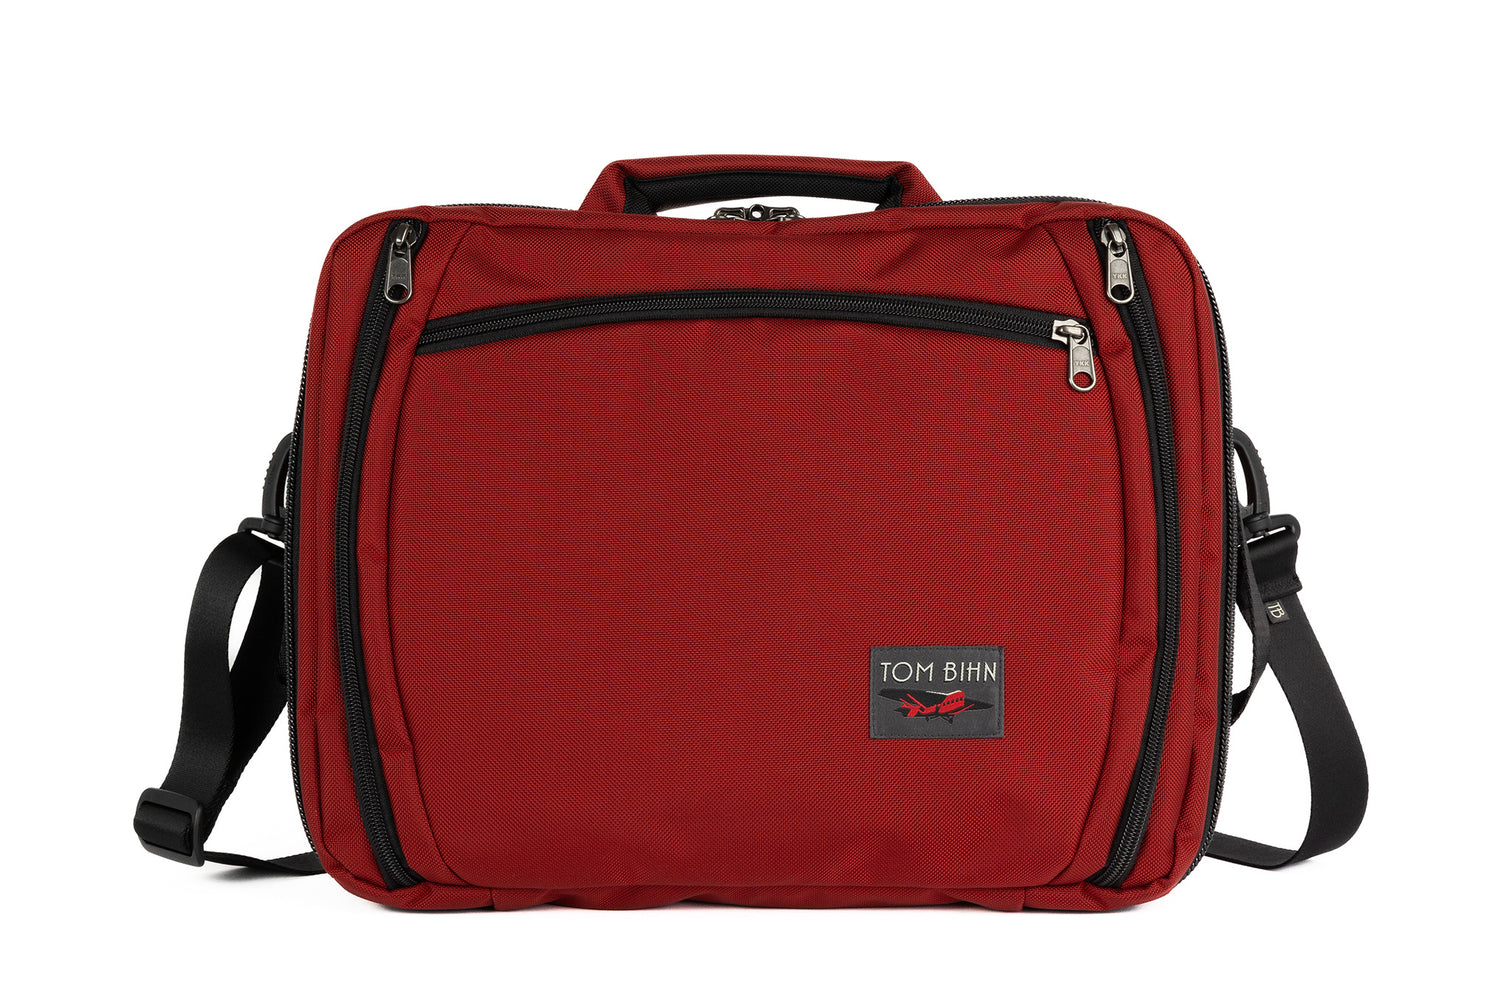 Travel Bags - Quality Materials + Design - TOM BIHN